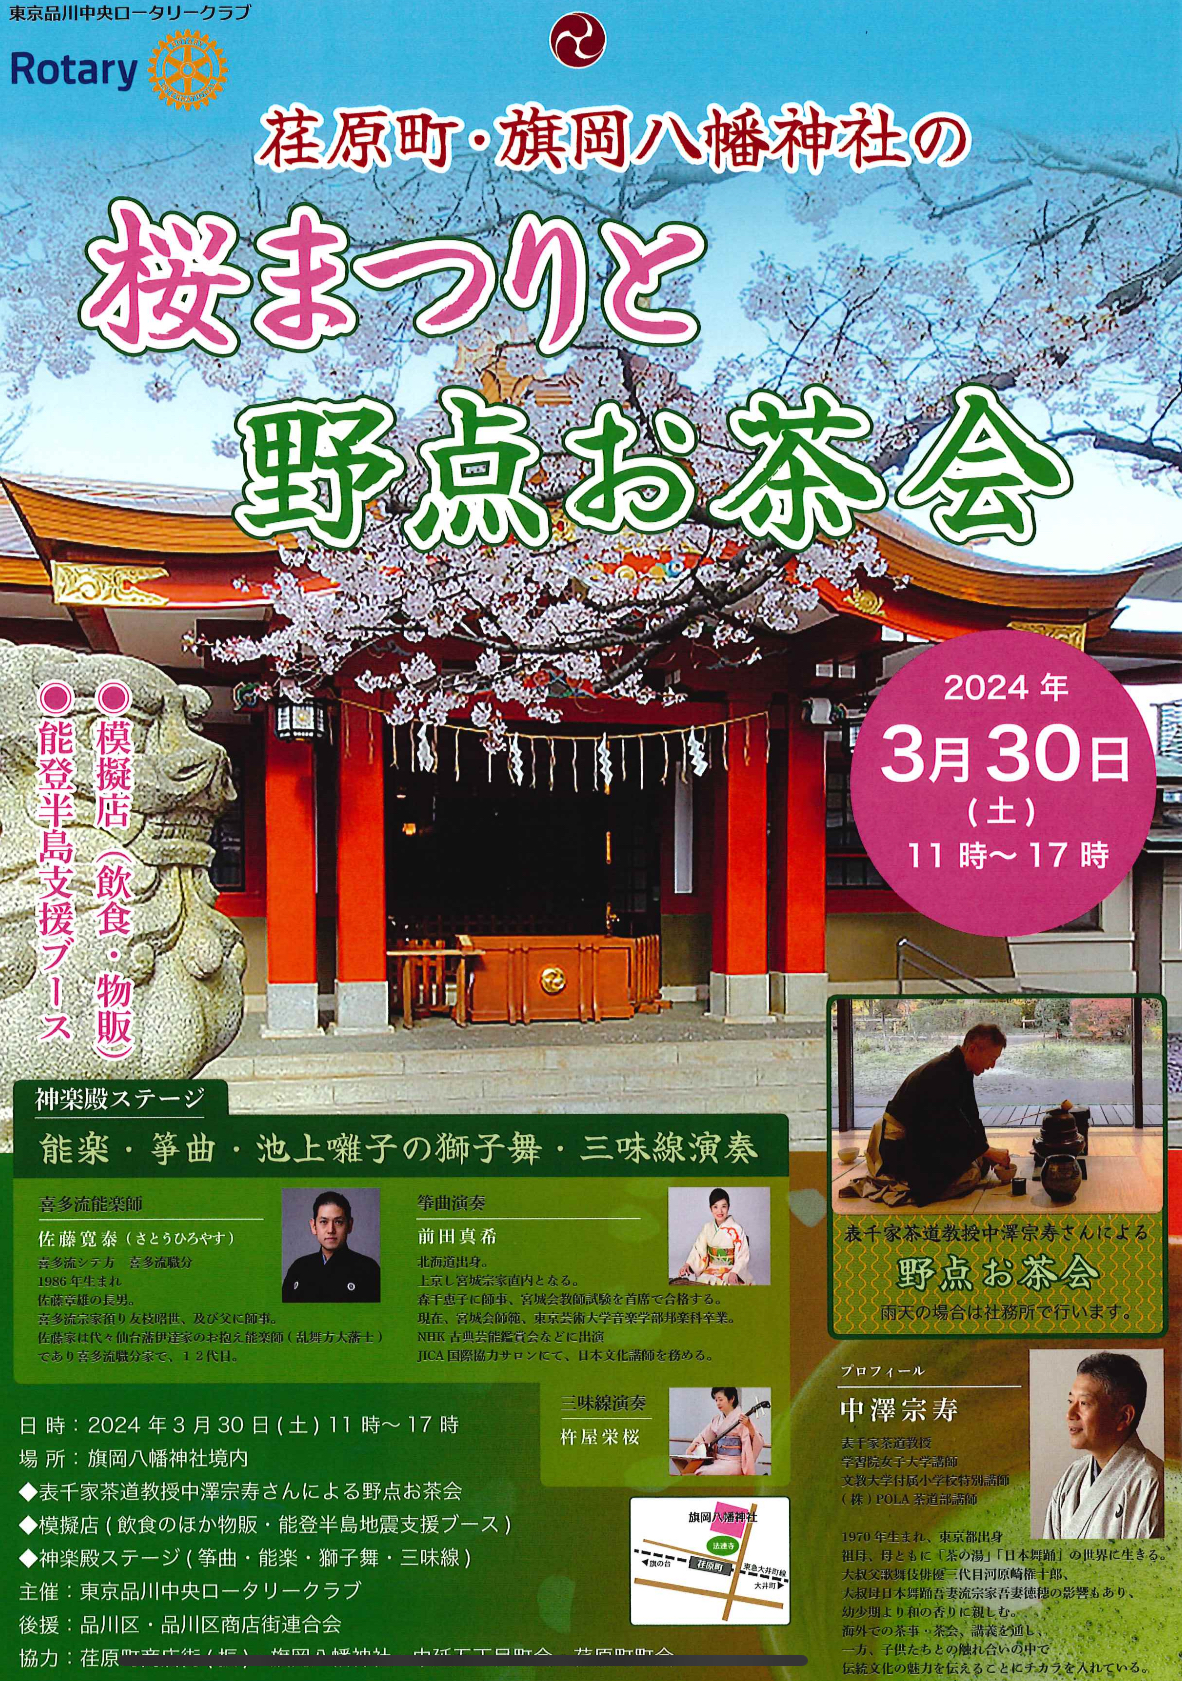 荏原町旗岡八幡神社の桜まつりと野点お茶会